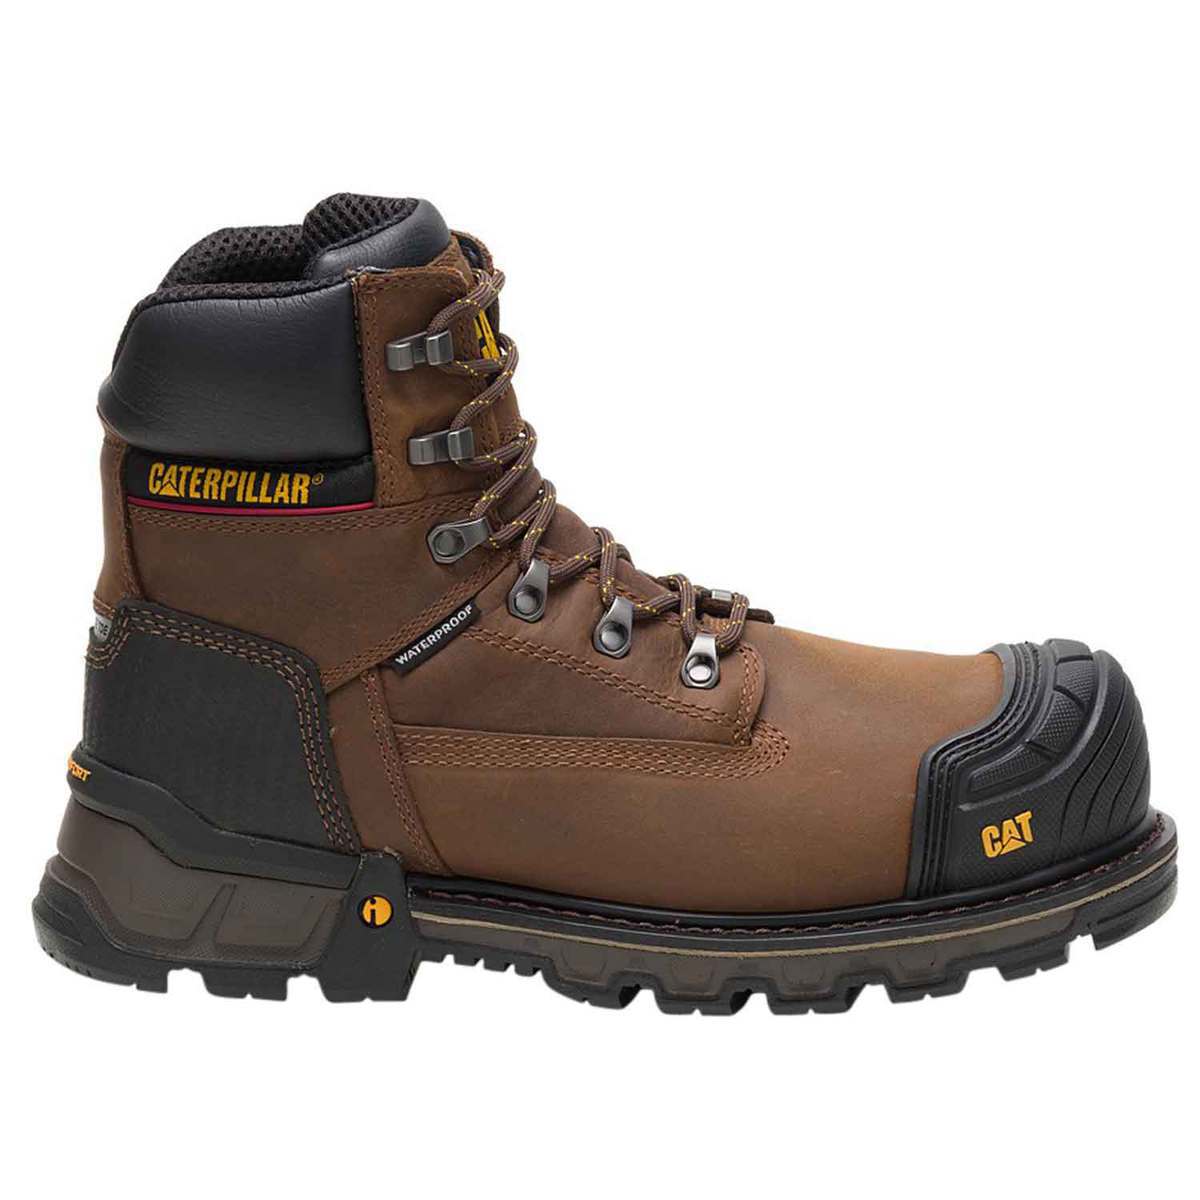 Caterpillar Men's Excavator XL 6 Inch Composite Toe Work Boots - Brown ...